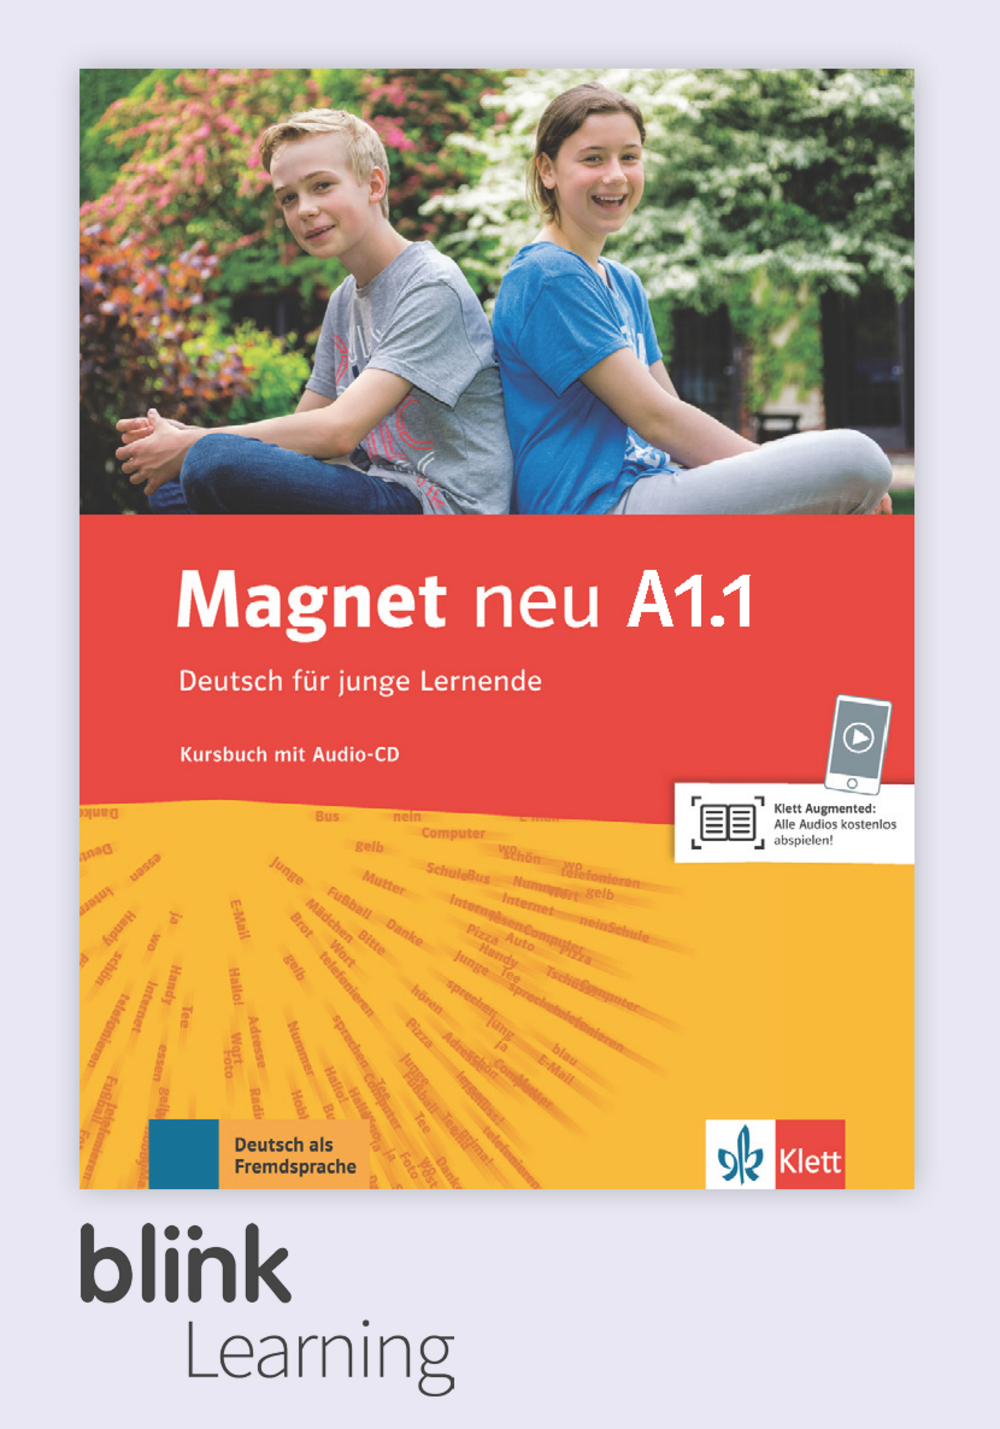 Magnet neu A1.1 Digital Kursbuch fur Lernende / Цифровой учебник для ученика (часть 1)